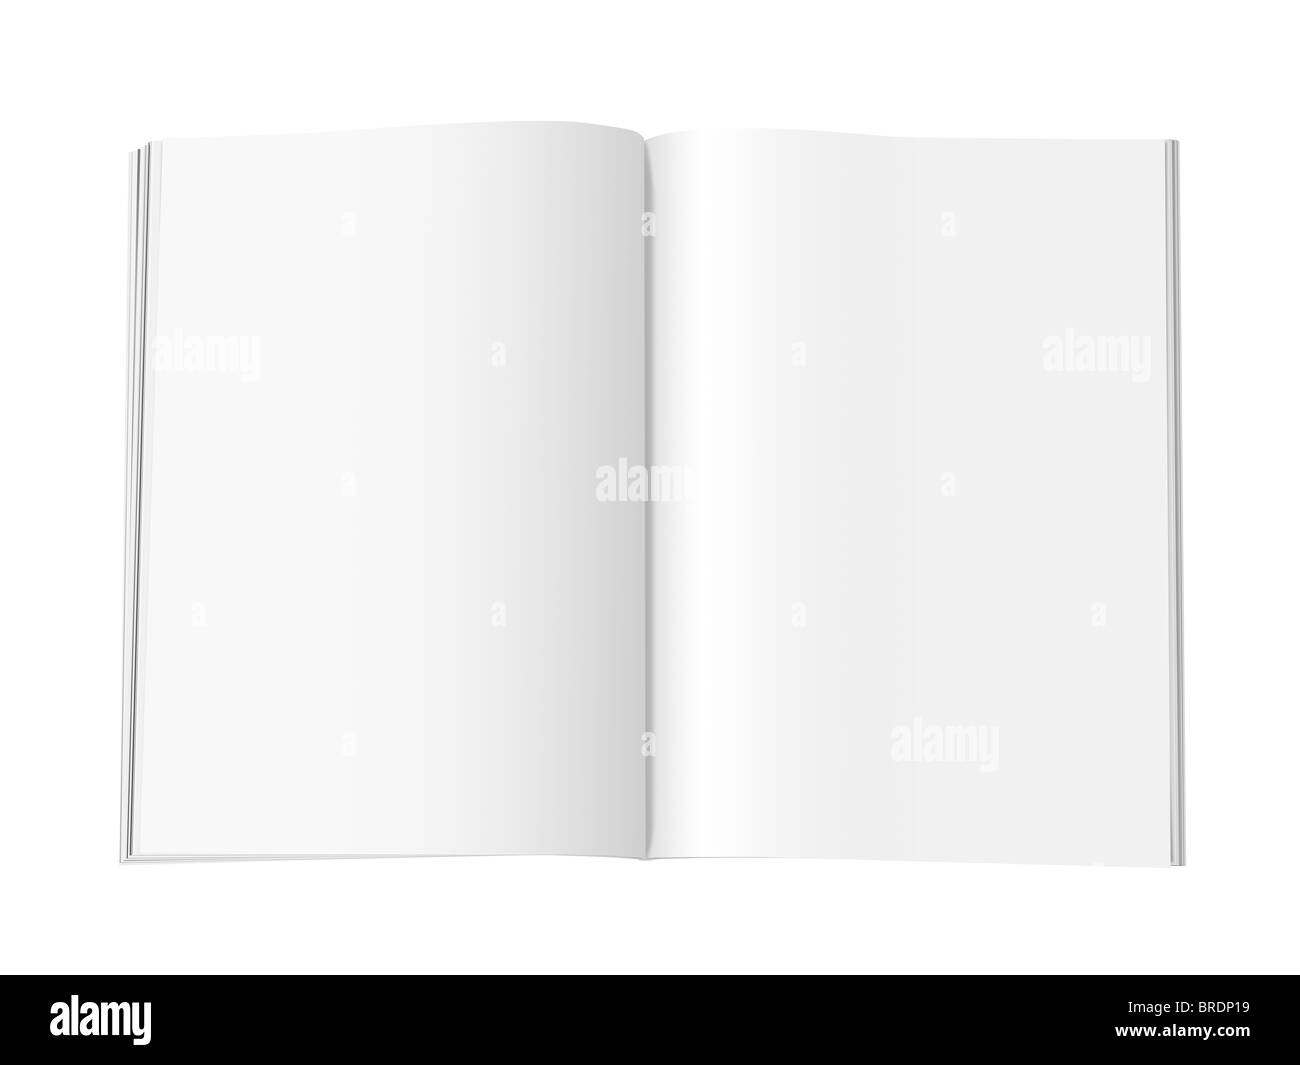 Magazzino vuoto con doppie pagine di diffusione, su sfondo bianco con ombre. Con percorso di clipping incluso Foto Stock